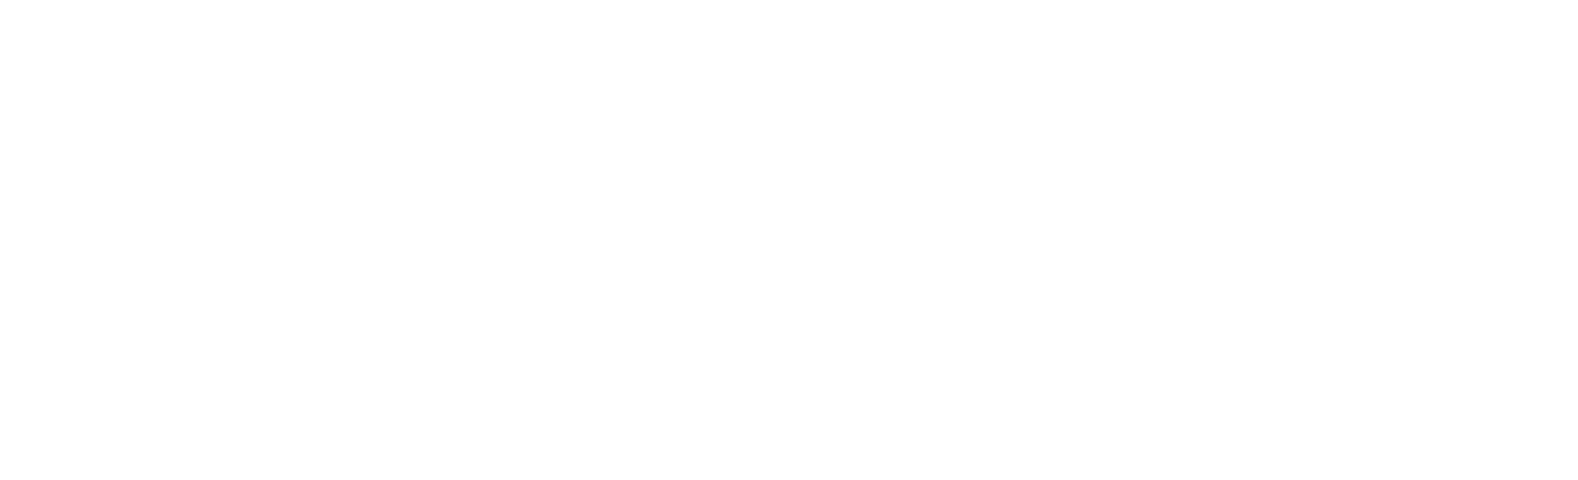 GEA Group
 logo pour fonds sombres (PNG transparent)